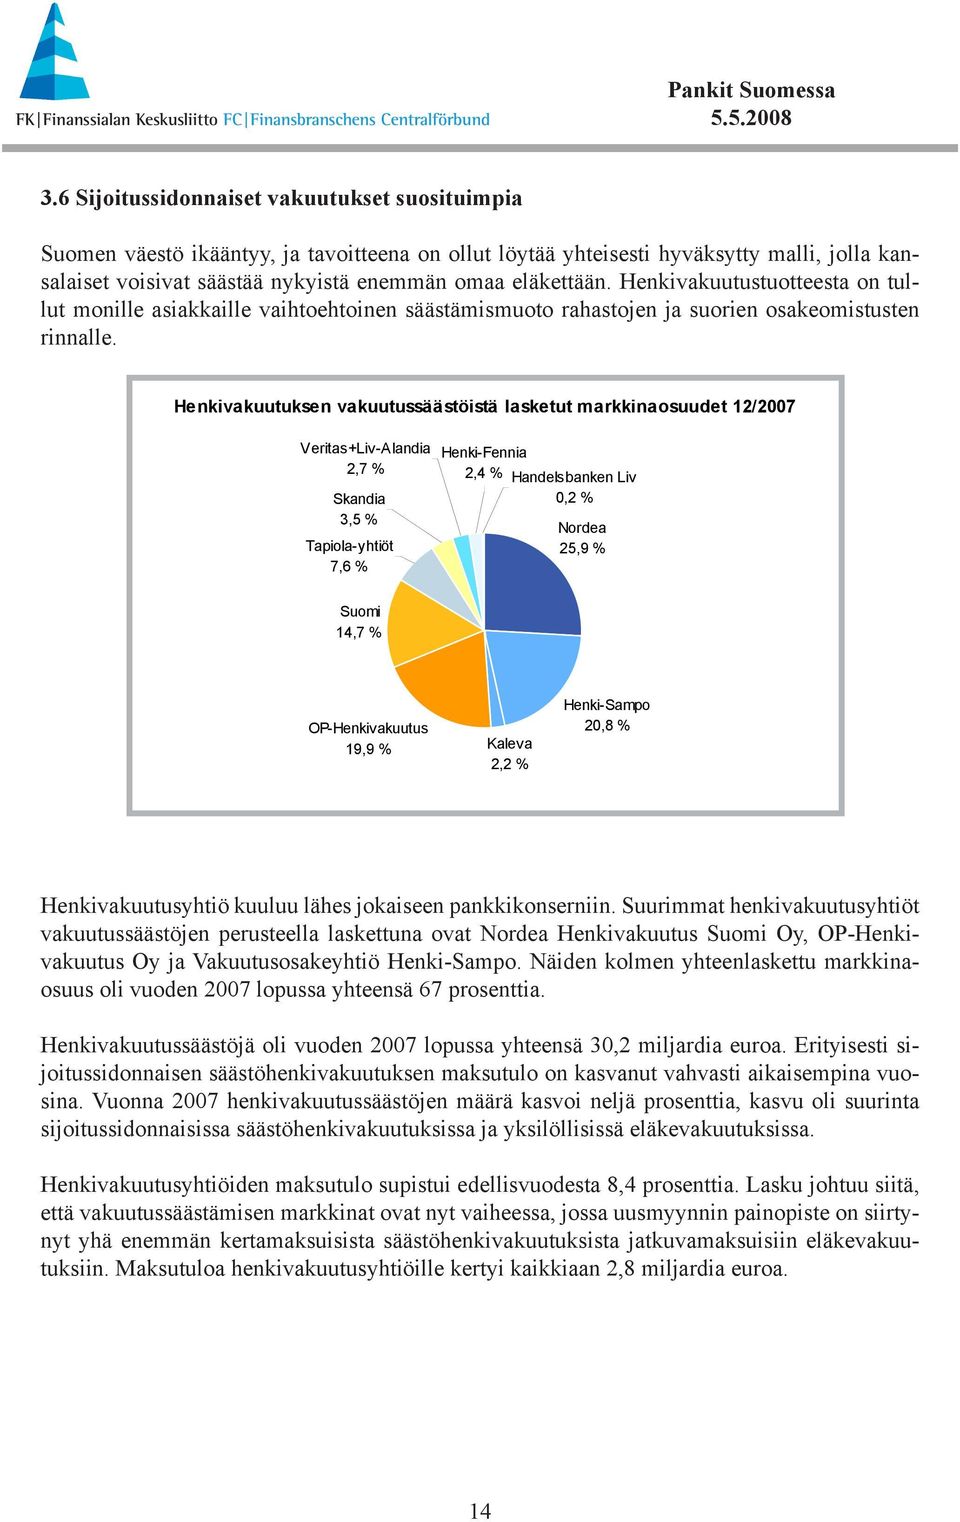 Henkivakuutuksen vakuutussäästöistä lasketut markkinaosuudet 12/27 Veritas+Liv-Alandia 2,7 % Skandia 3,5 % Tapiola-yhtiöt 7,6 % Henki-Fennia 2,4 % Handelsbanken Liv,2 % Nordea 25,9 % Suomi 14,7 %